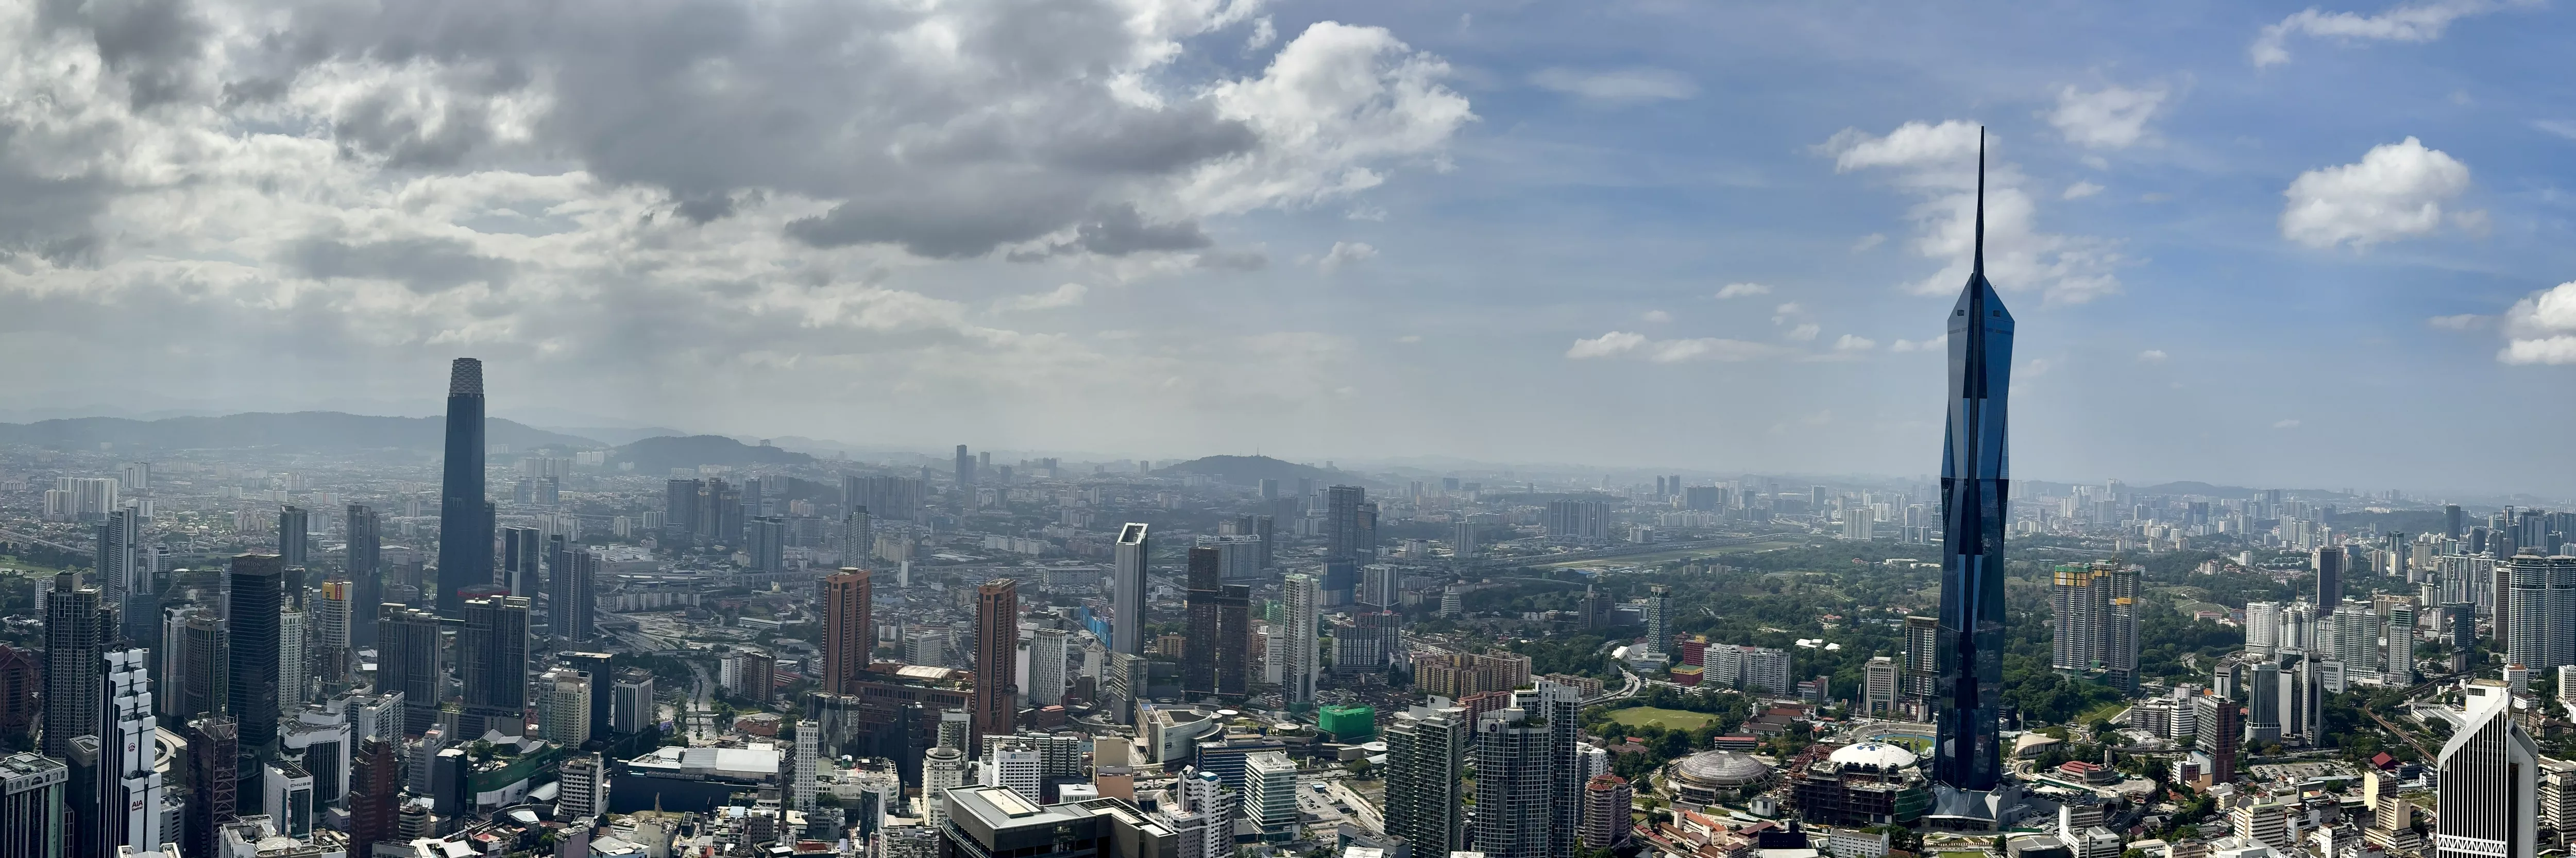 Panorama shot with Merdeka 118, Kuala Lumpur Malaysia